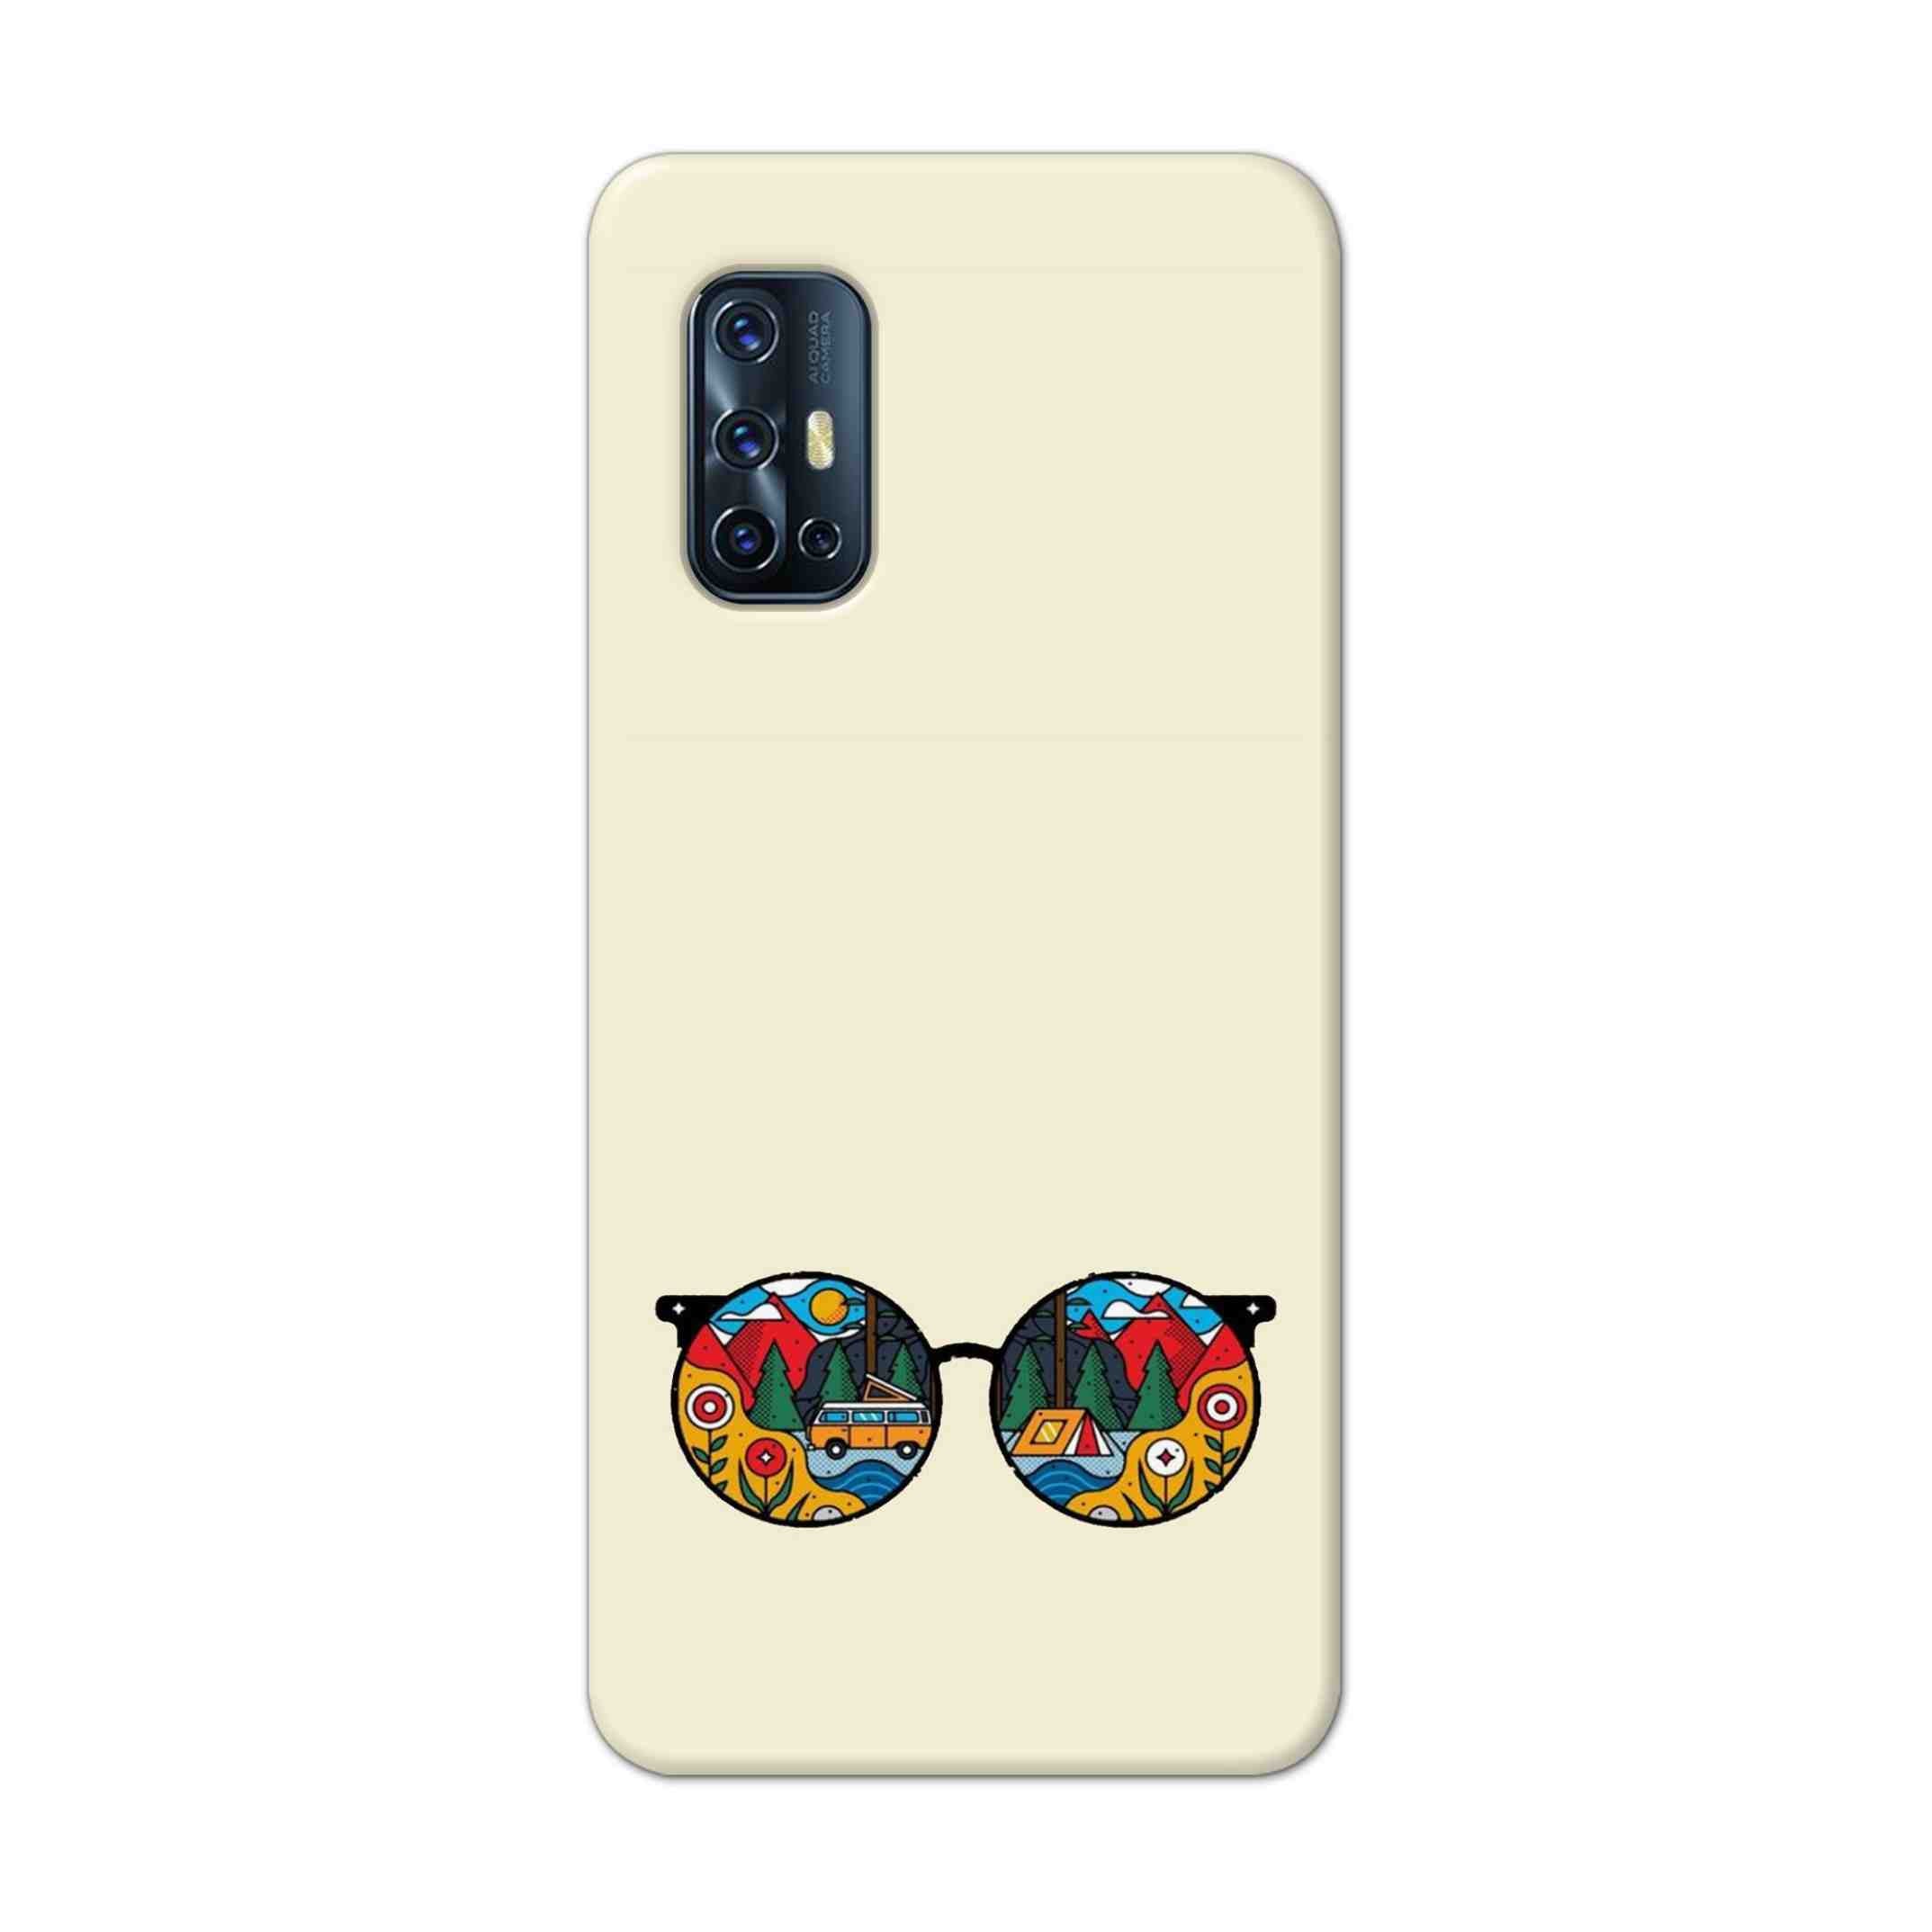 Buy Rainbow Sunglasses Hard Back Mobile Phone Case Cover For Vivo V17 Online